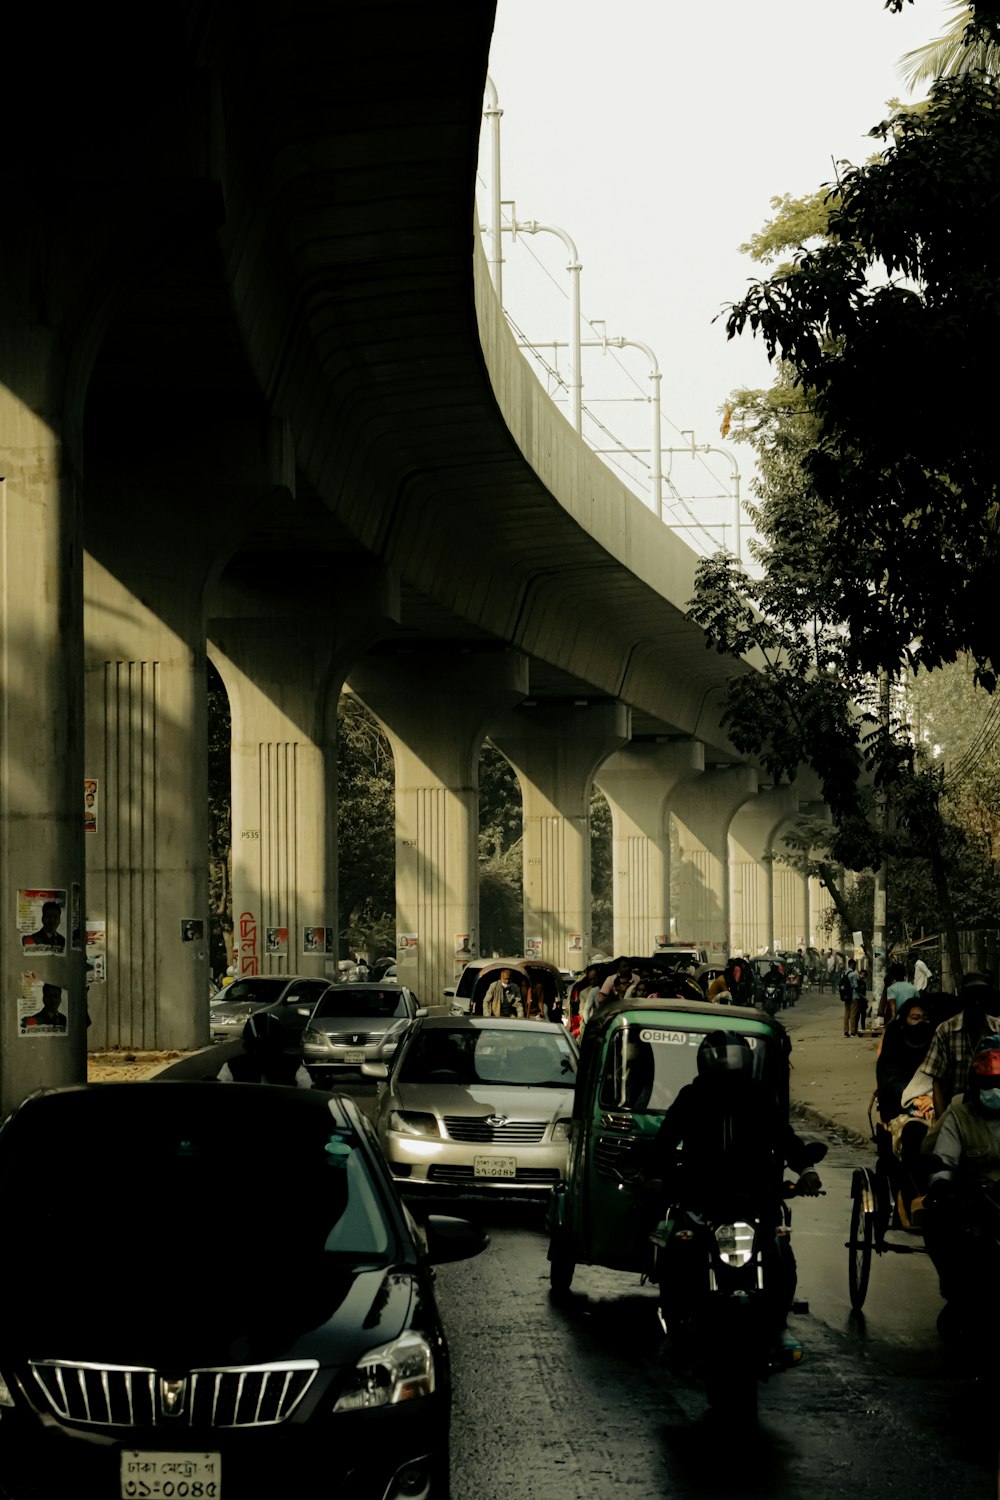 Una calle llena de mucho tráfico bajo un puente